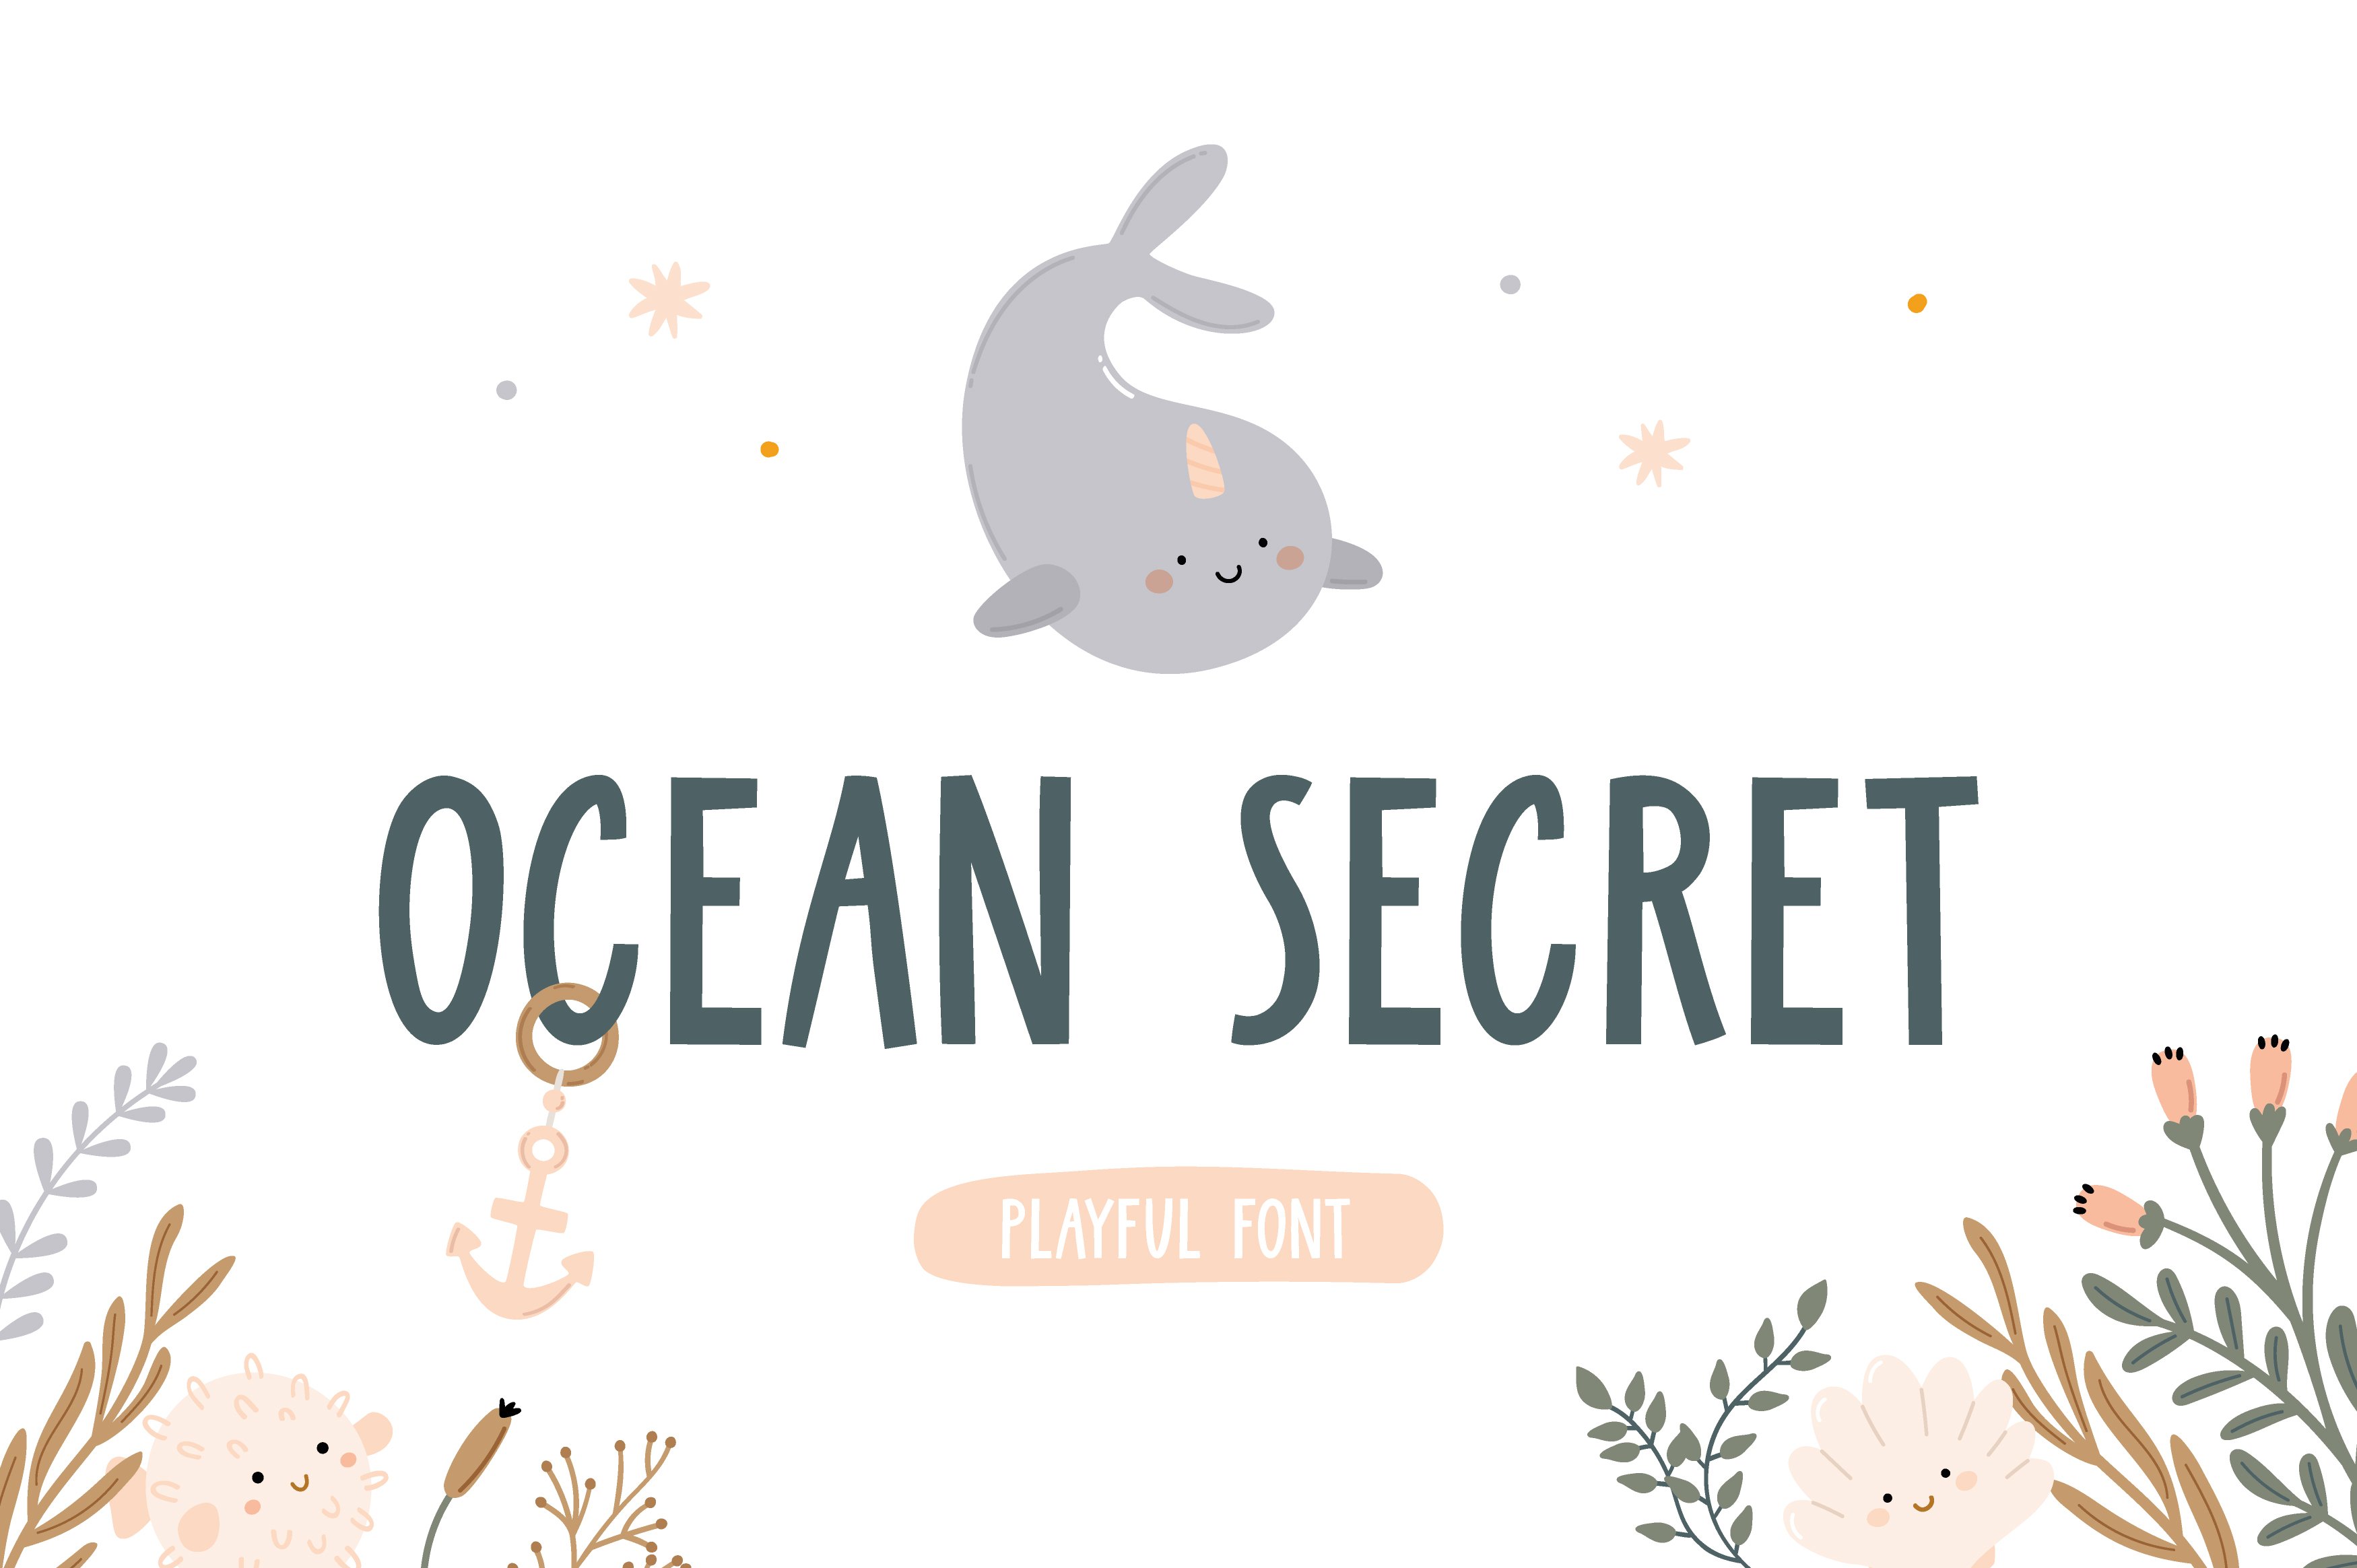 Ocean Secret | Playful font cover image.